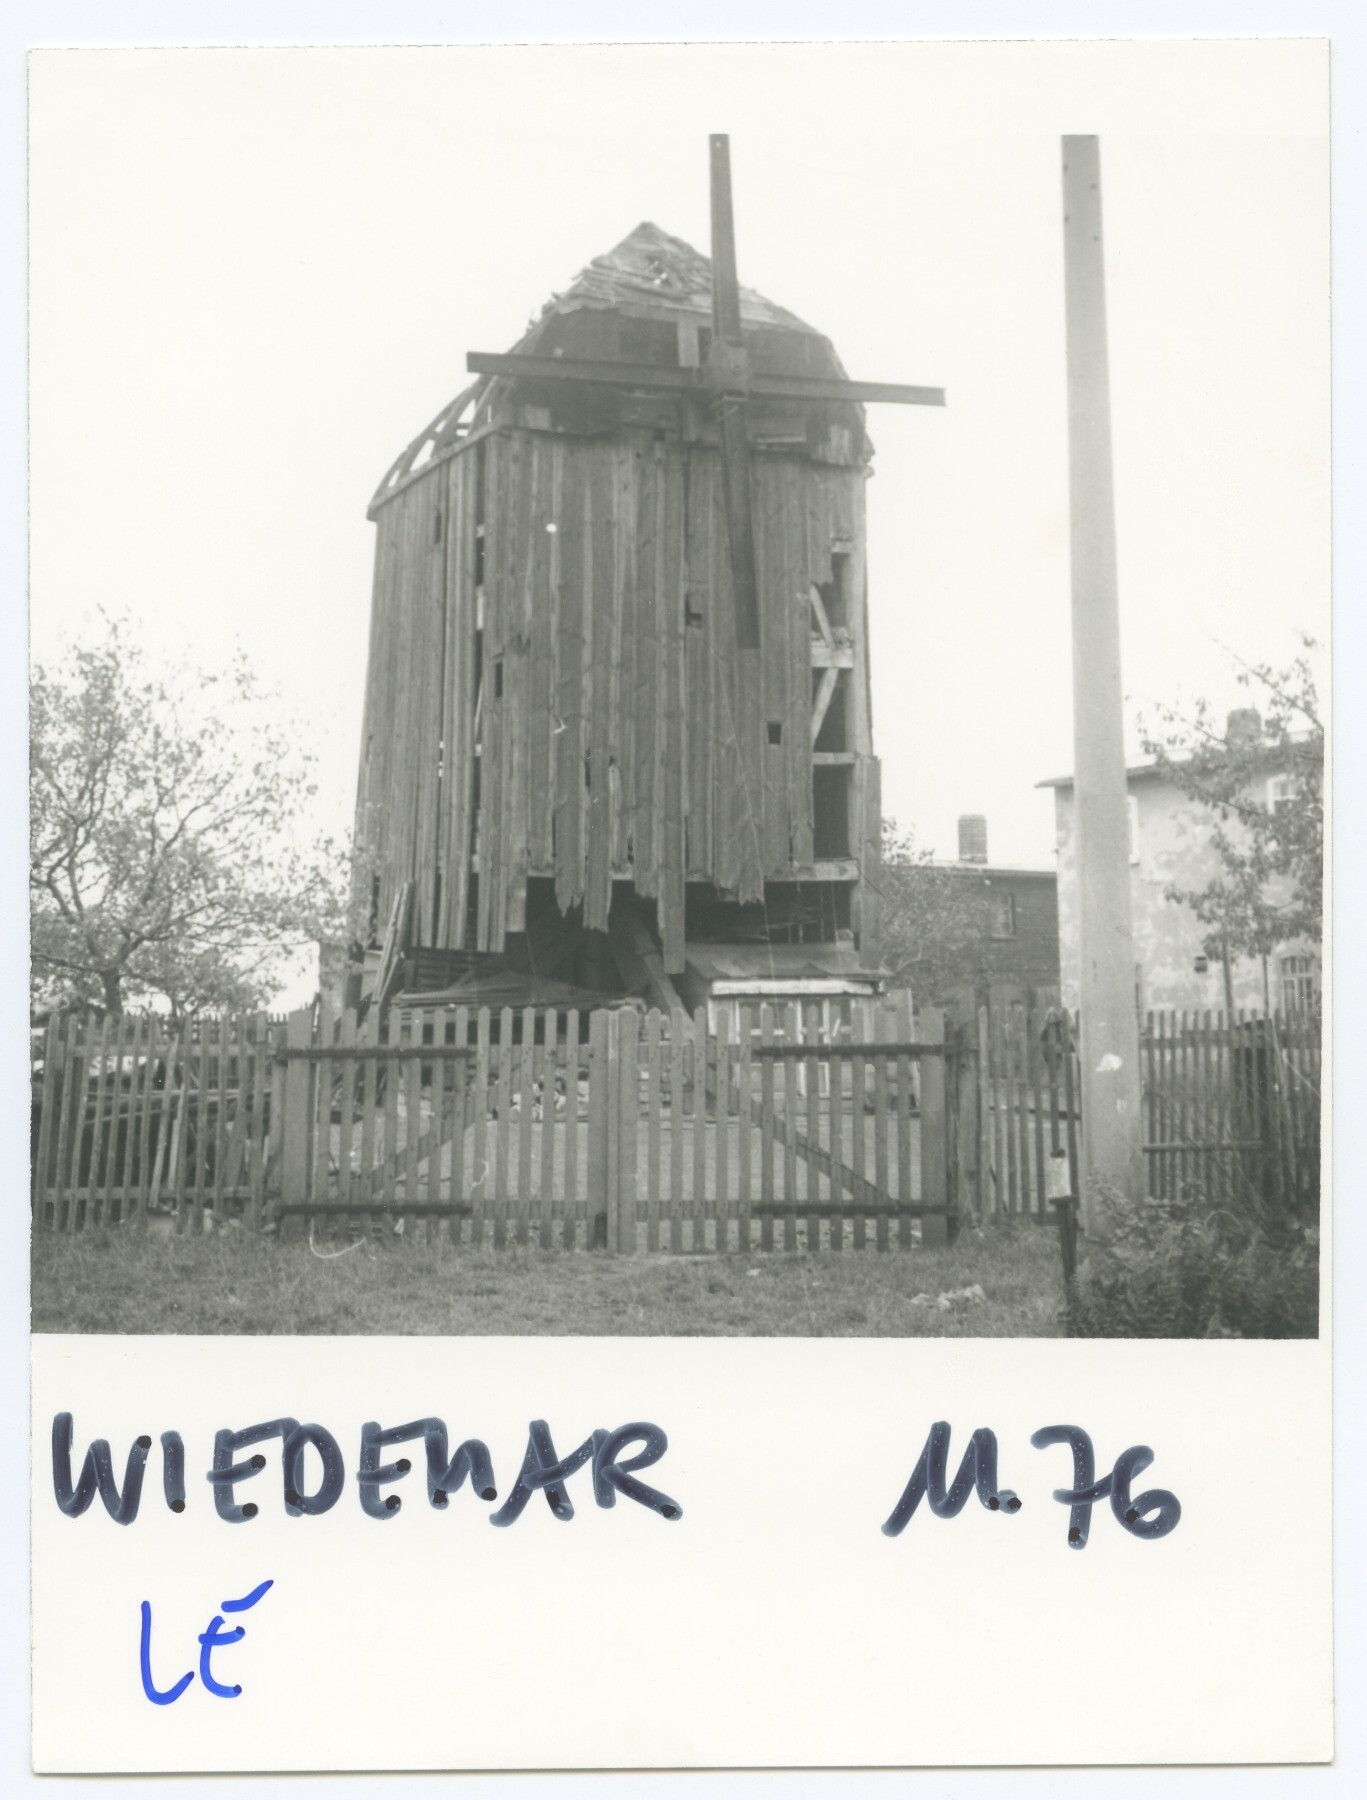 Bockwindmühle Wiedemar - Schulzemühle (Historische Mühle von Sanssouci CC BY-NC-ND)